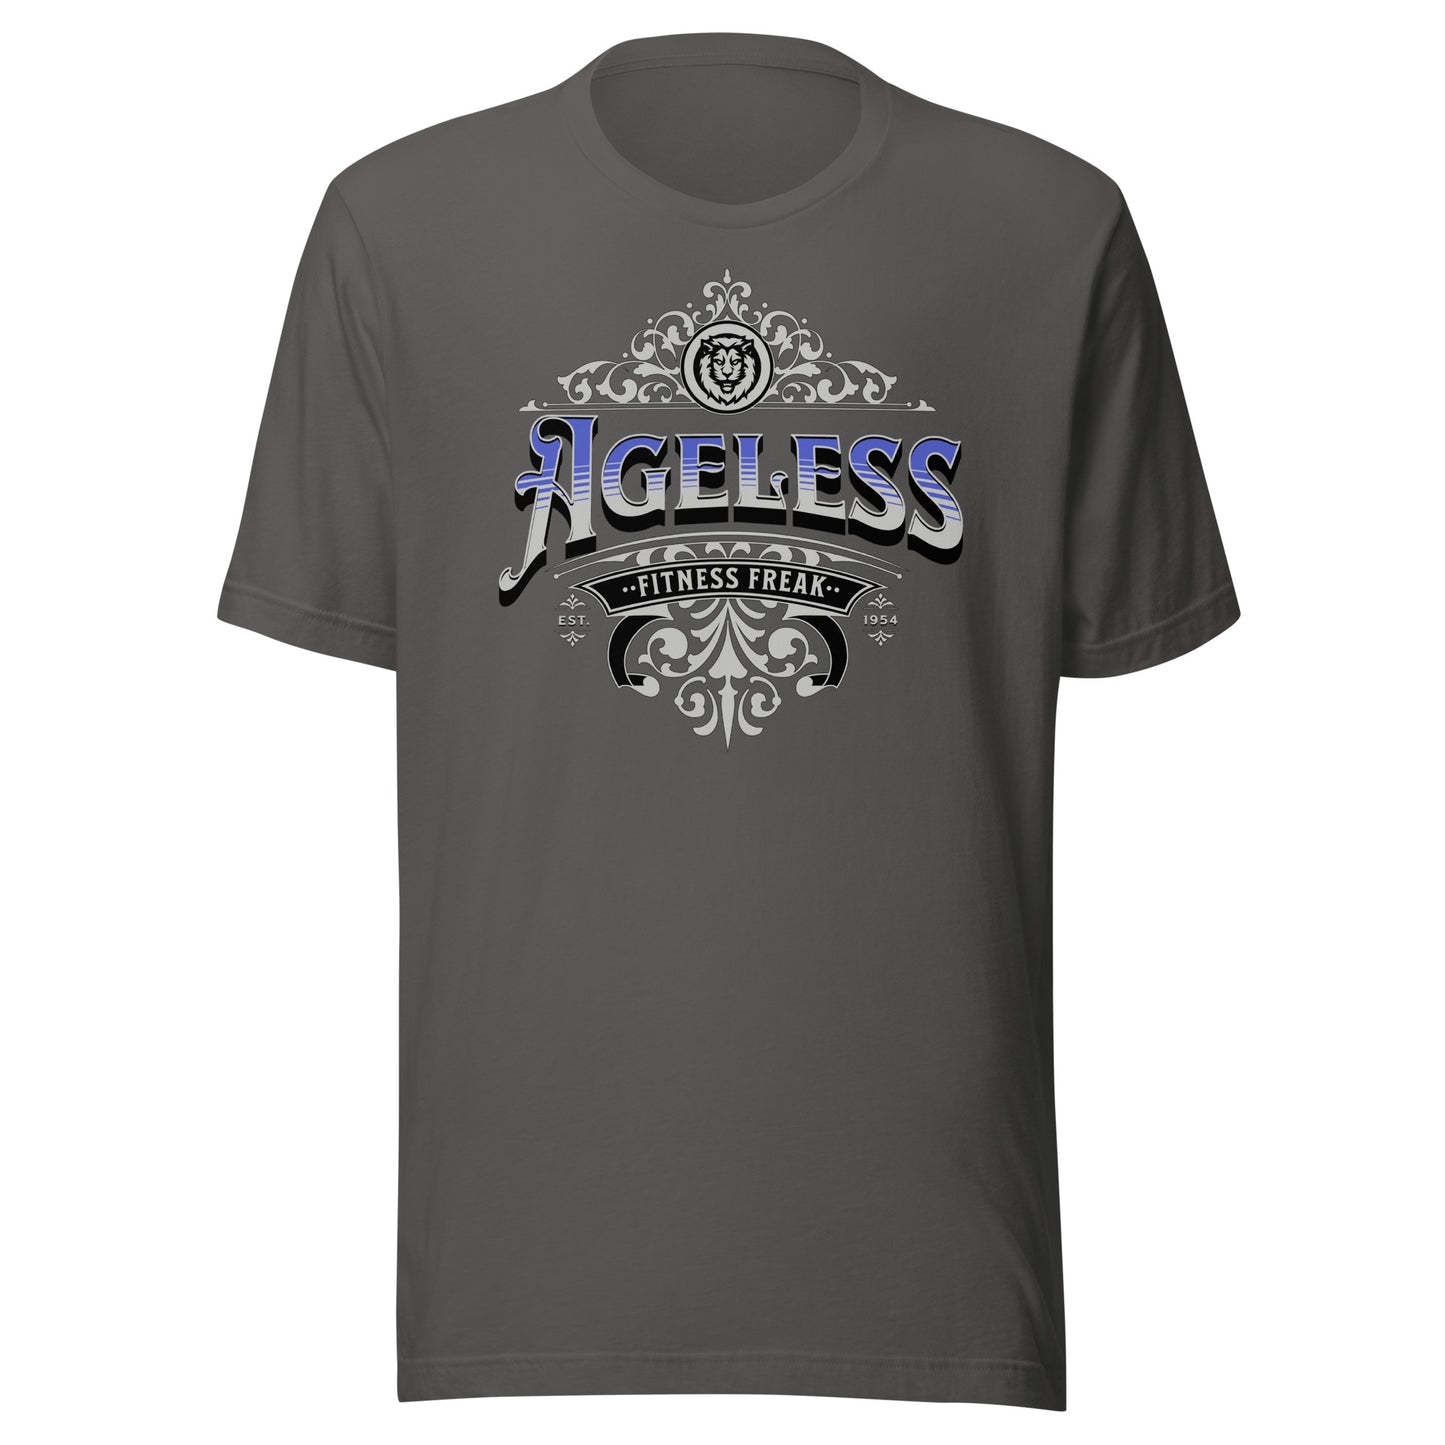 Ageless Fitness Freak Unisex T-shirt